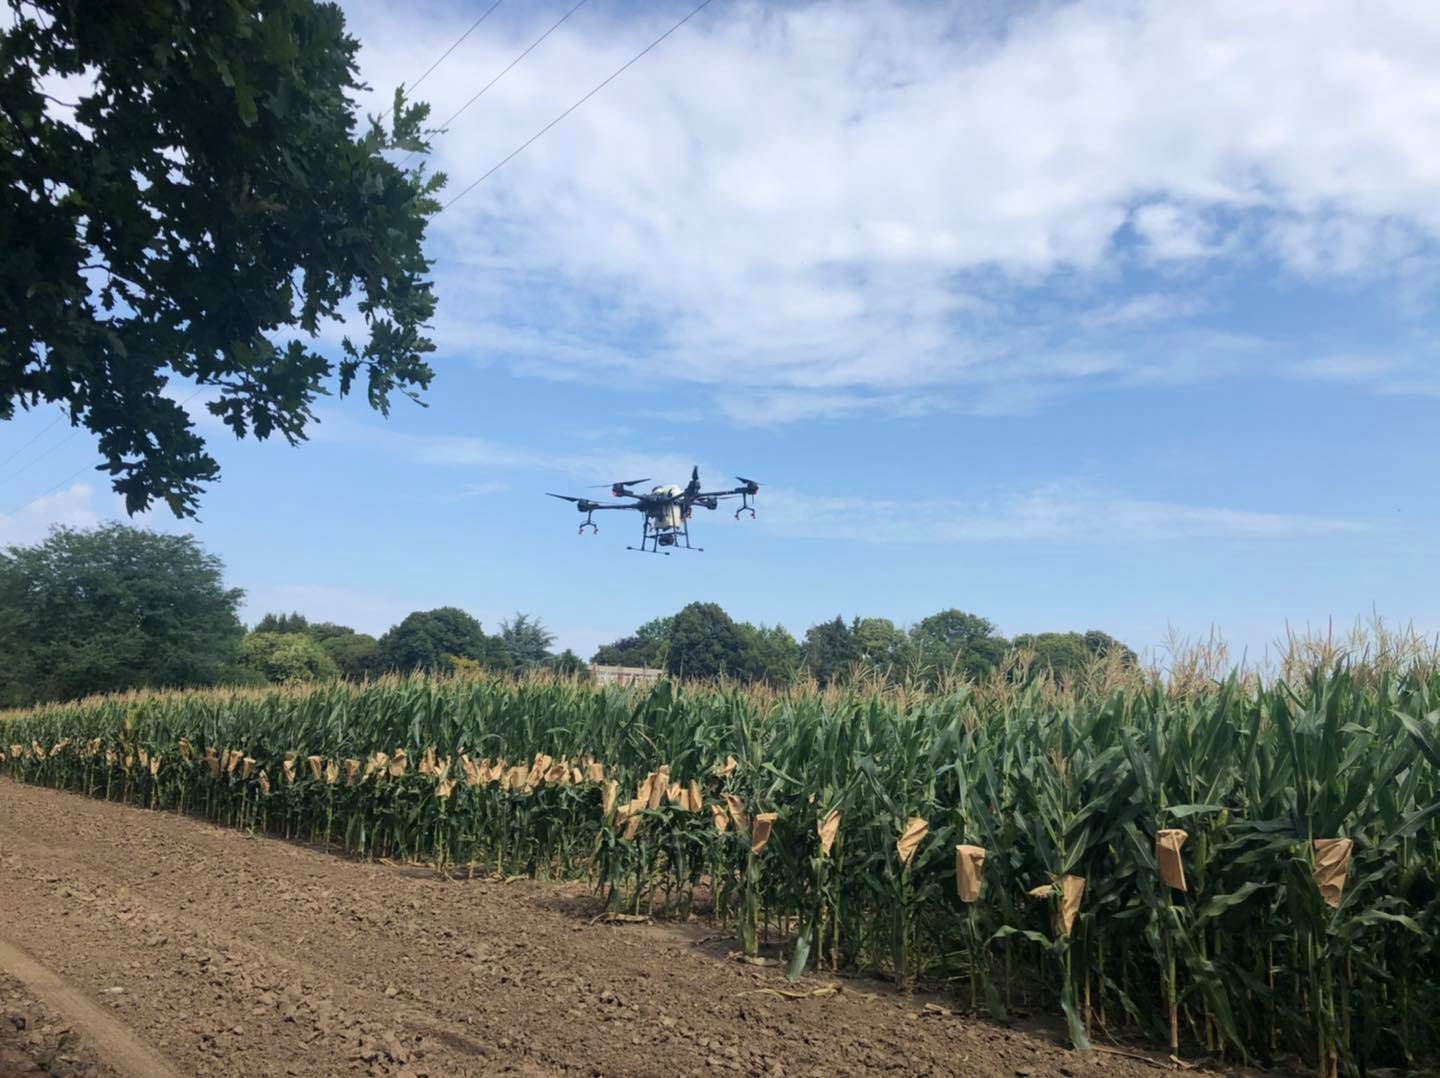  Bespilotne letjelice u poljoprivredi: Dronovi sve vide 